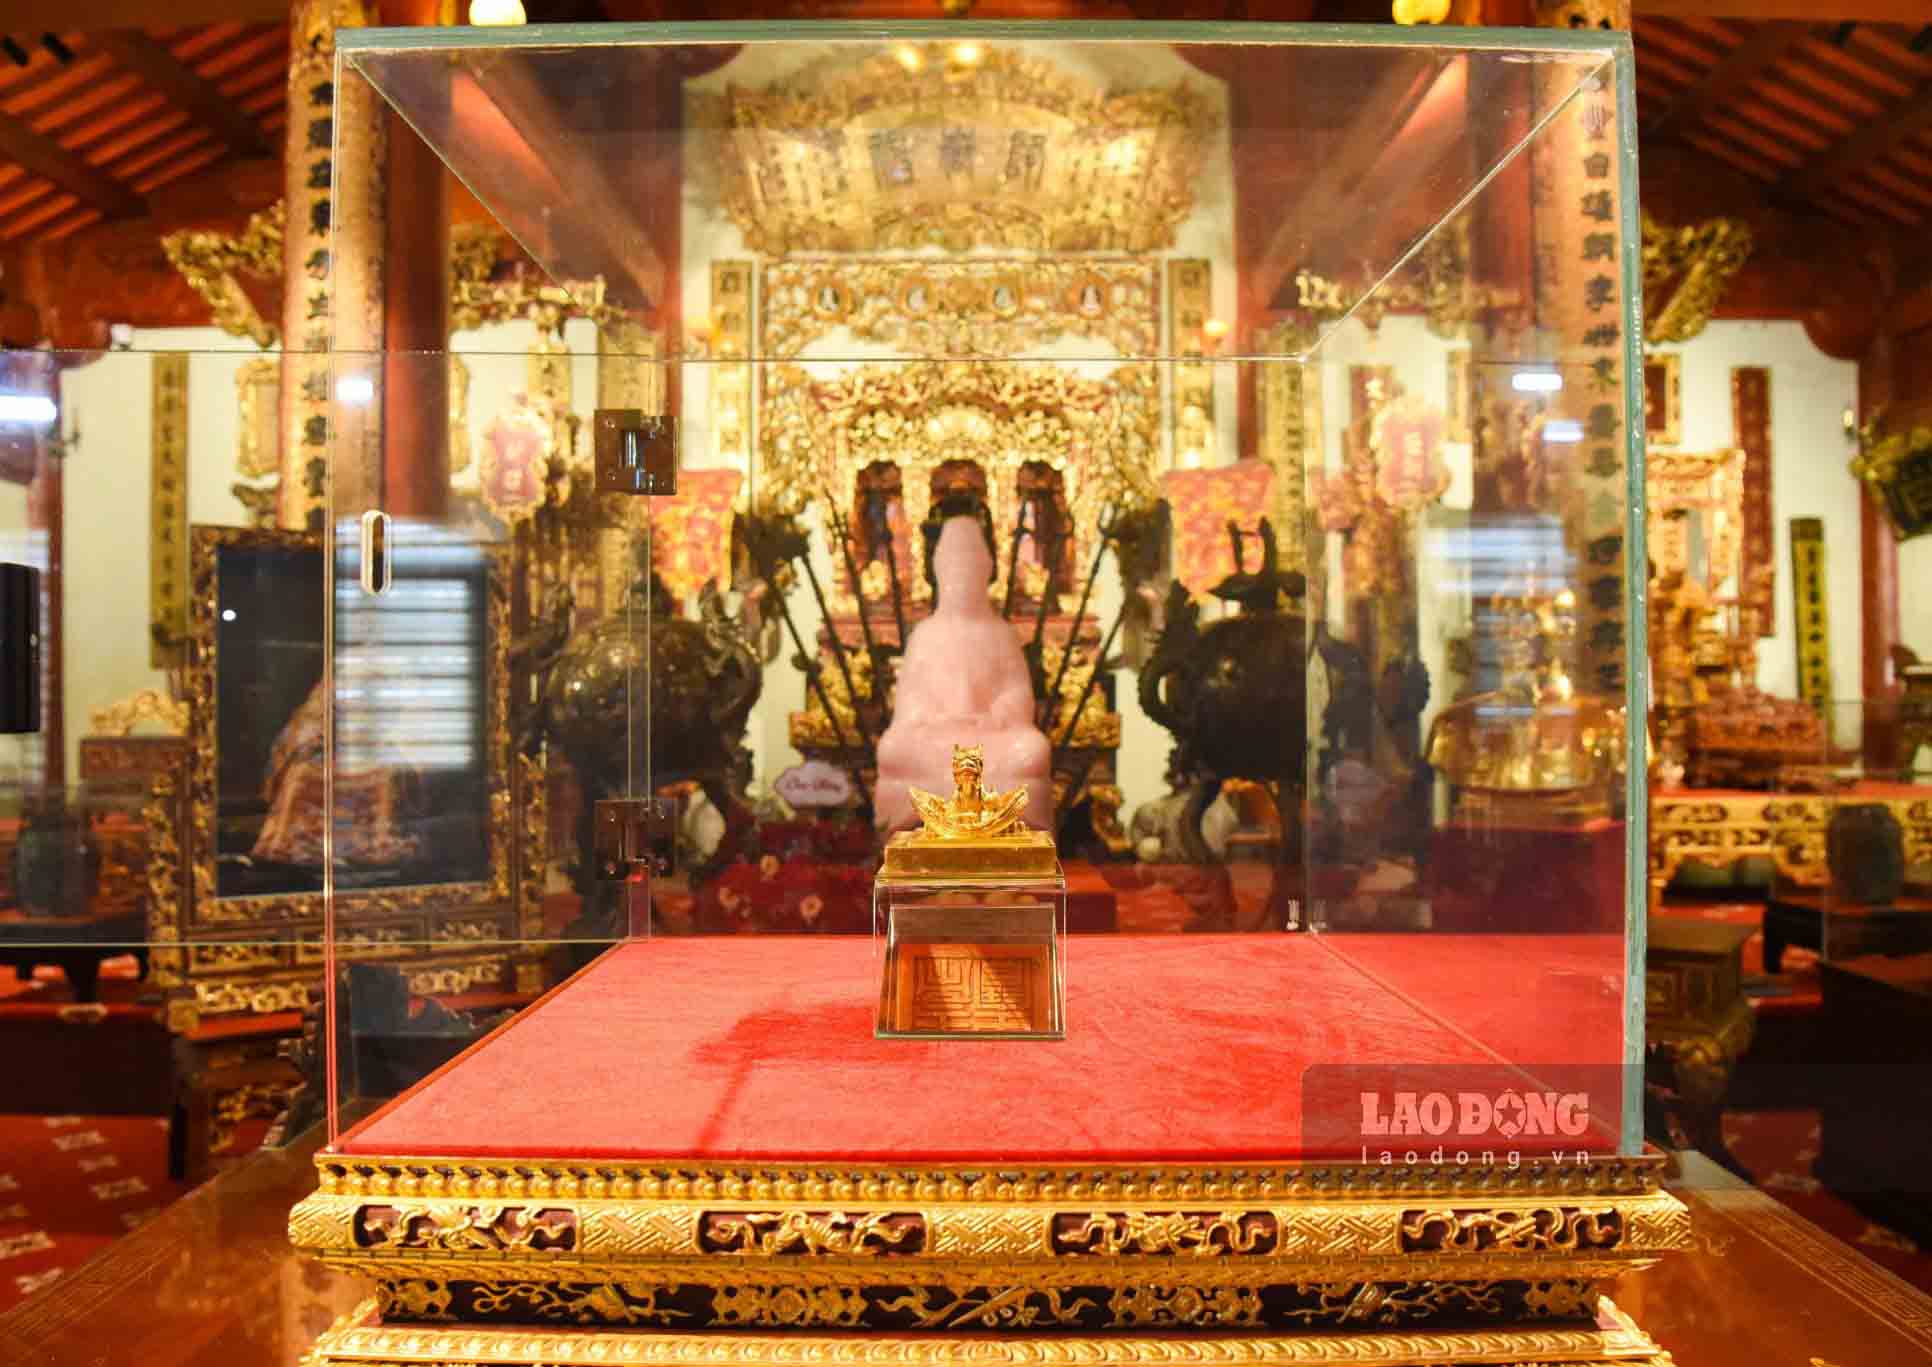 Ấn vàng Hoàng đế chi bảo hiện được trưng bày giữa gian phòng hơn 100 m2, nằm trong Bảo tàng Hoàng gia Nam Hồng (TP Từ Sơn, tỉnh Bắc Ninh).